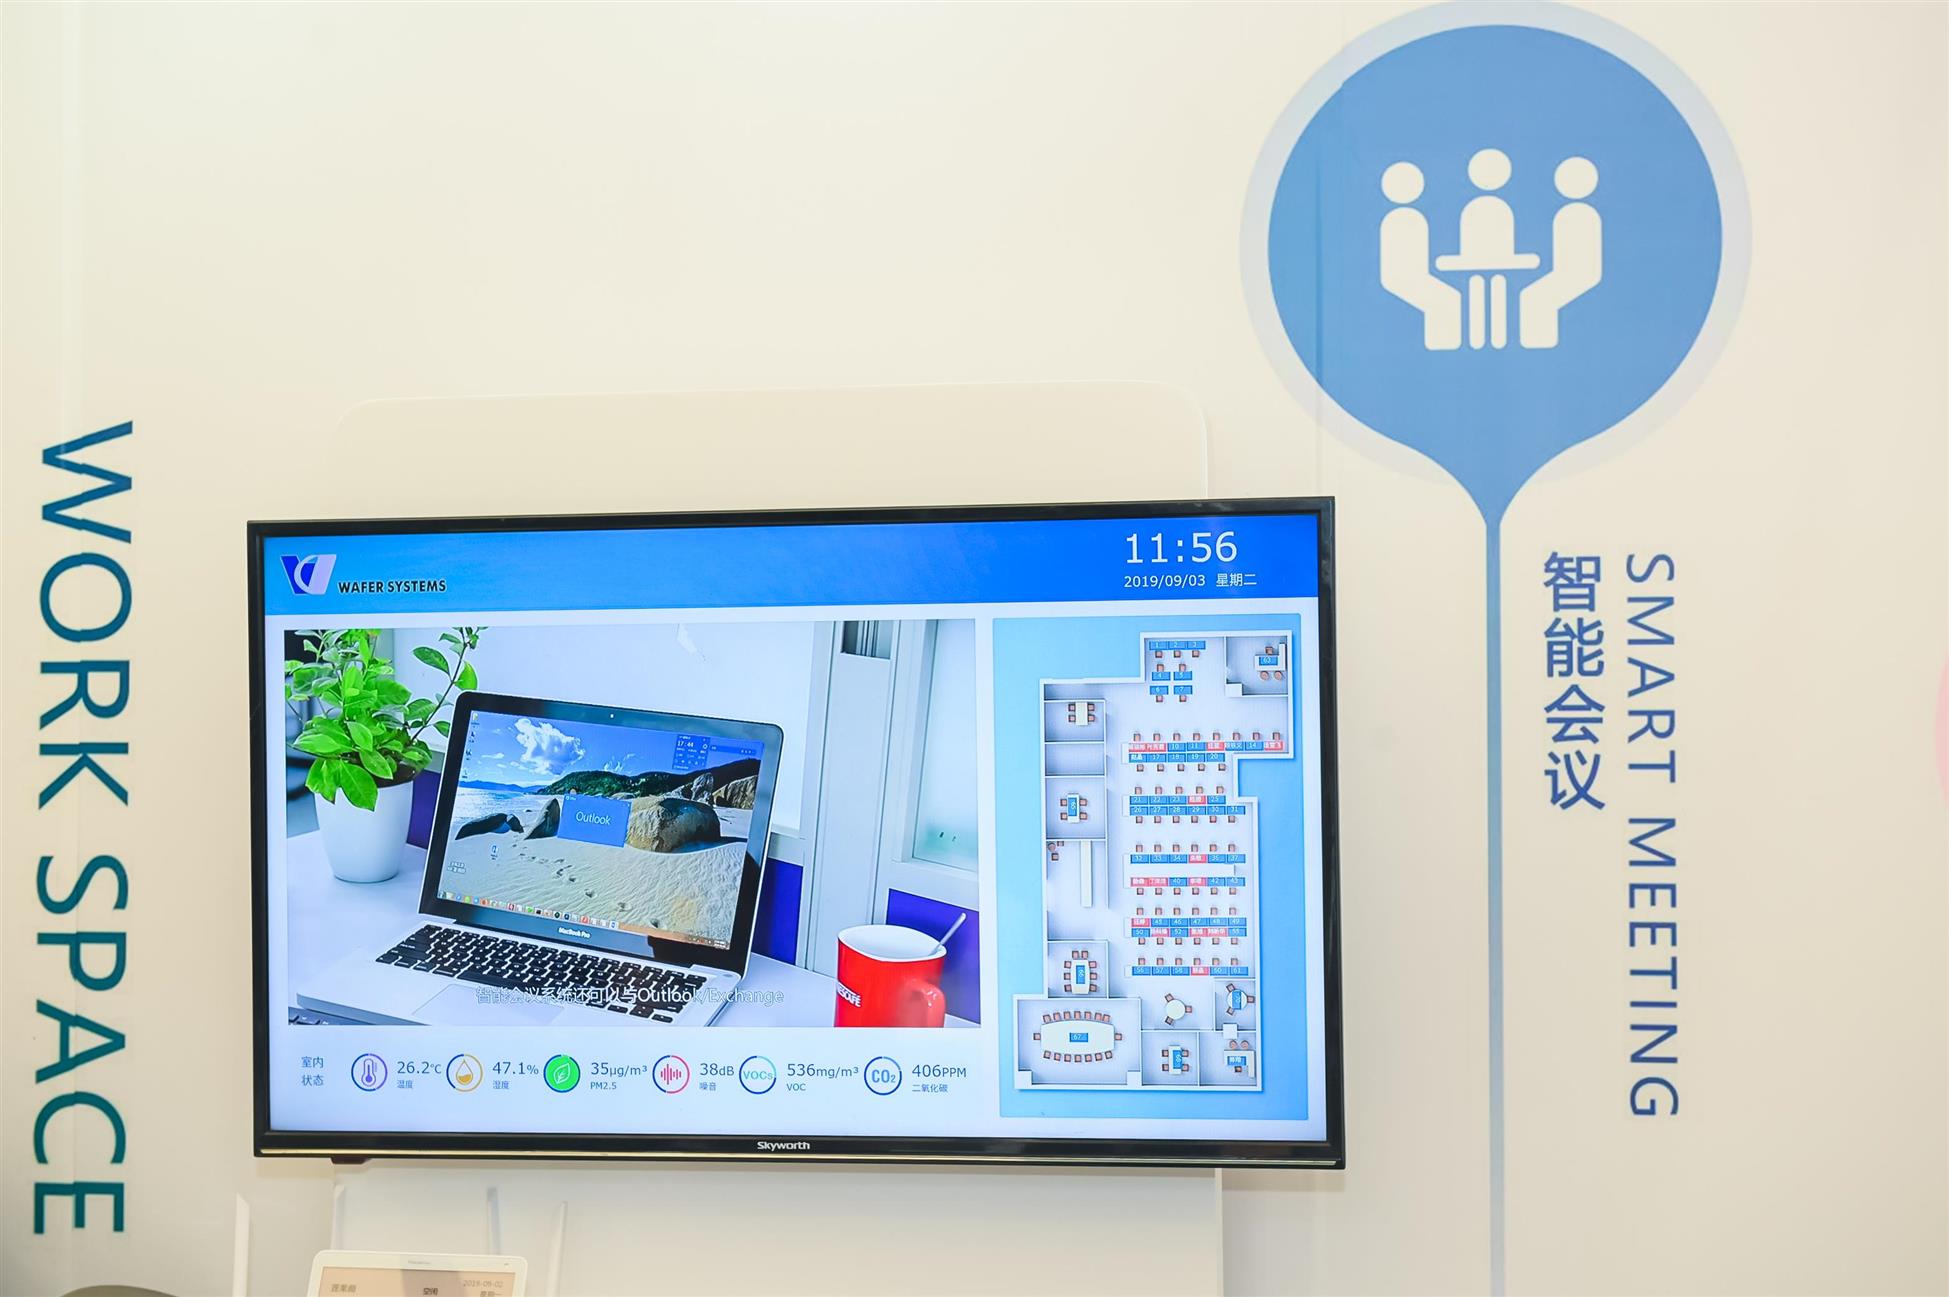 智能办公展上海国际智能智慧办公展览会正式启动